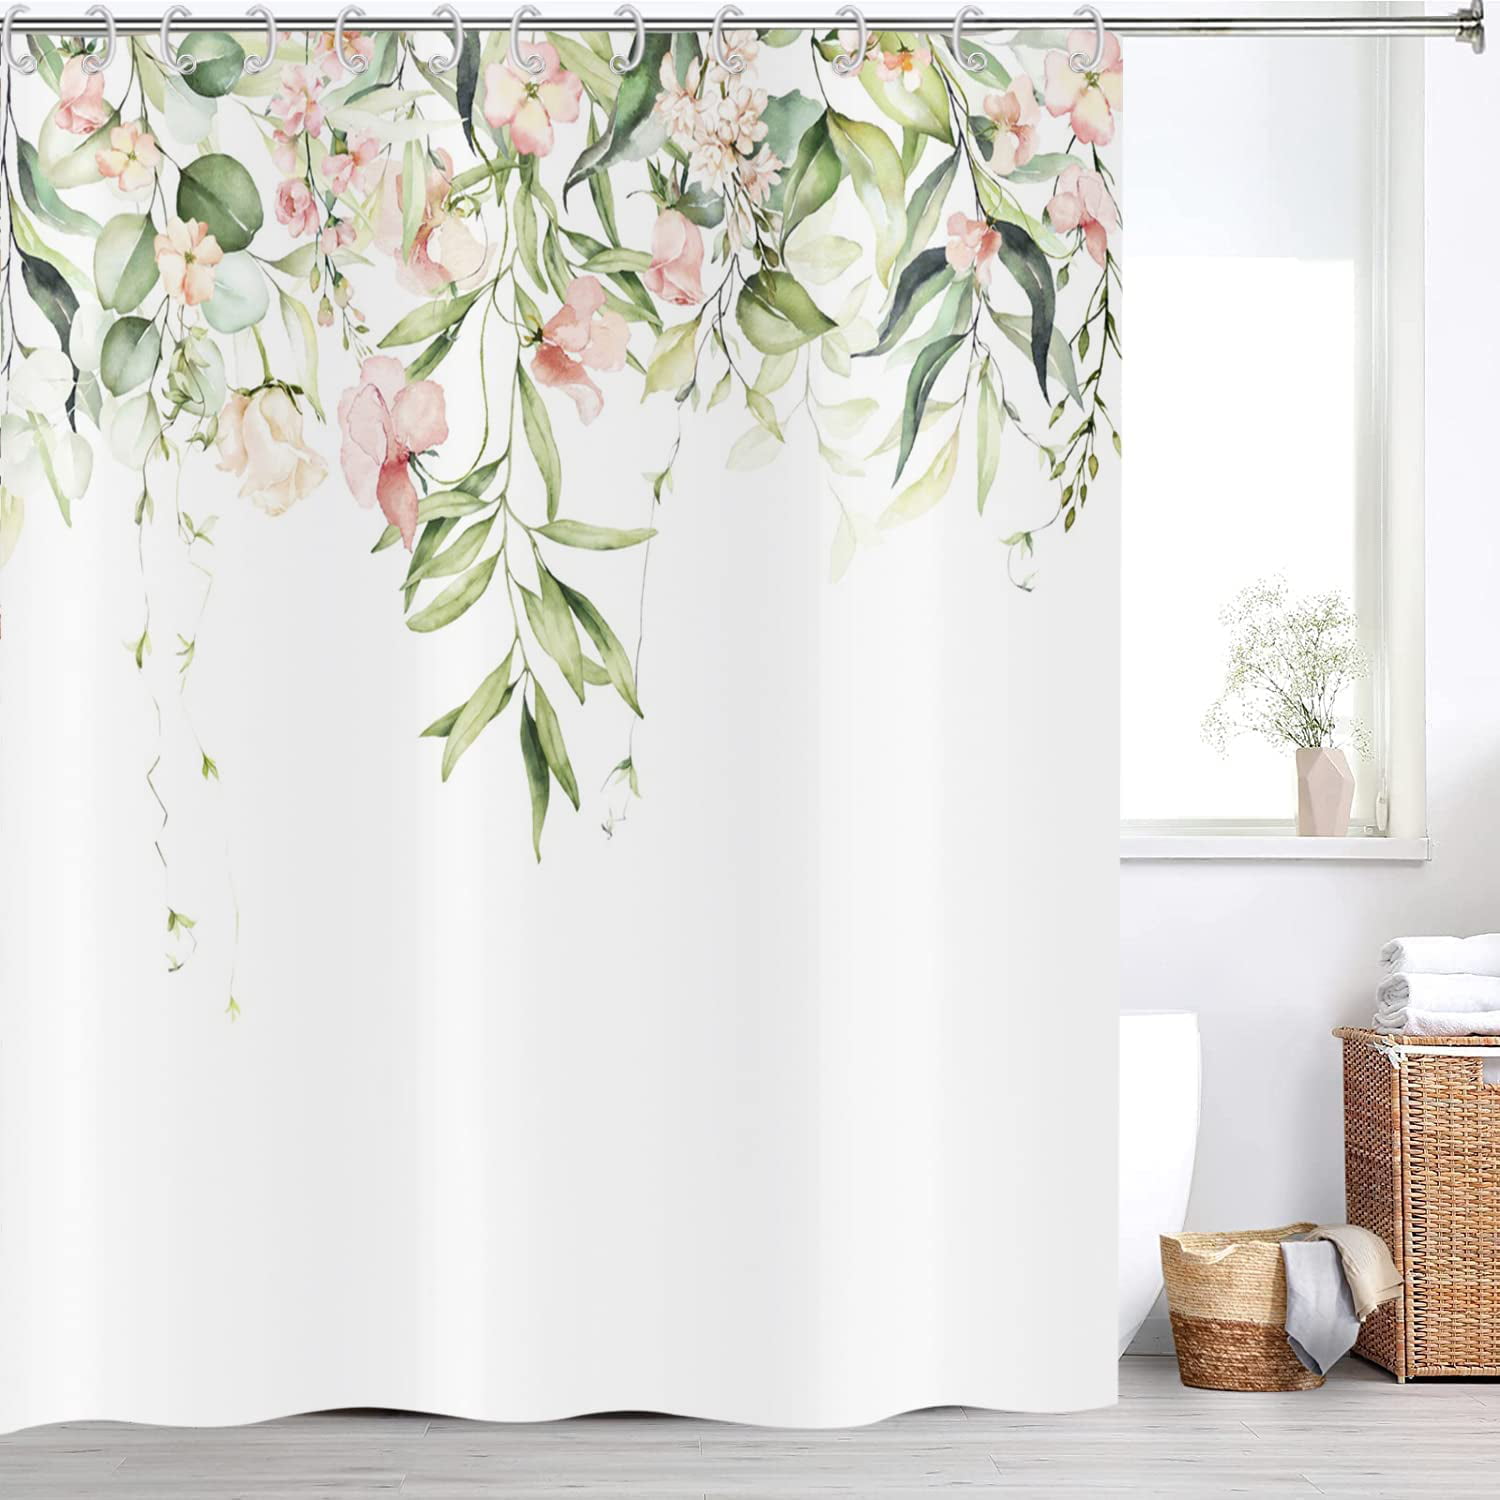 Typruye Green Plant Shower Curtain Waterproof Cloth Plant Leaf Fabric Leafs  Shower Curtains for Bathroom Succulent Botanical Bathroom Decor 72 x